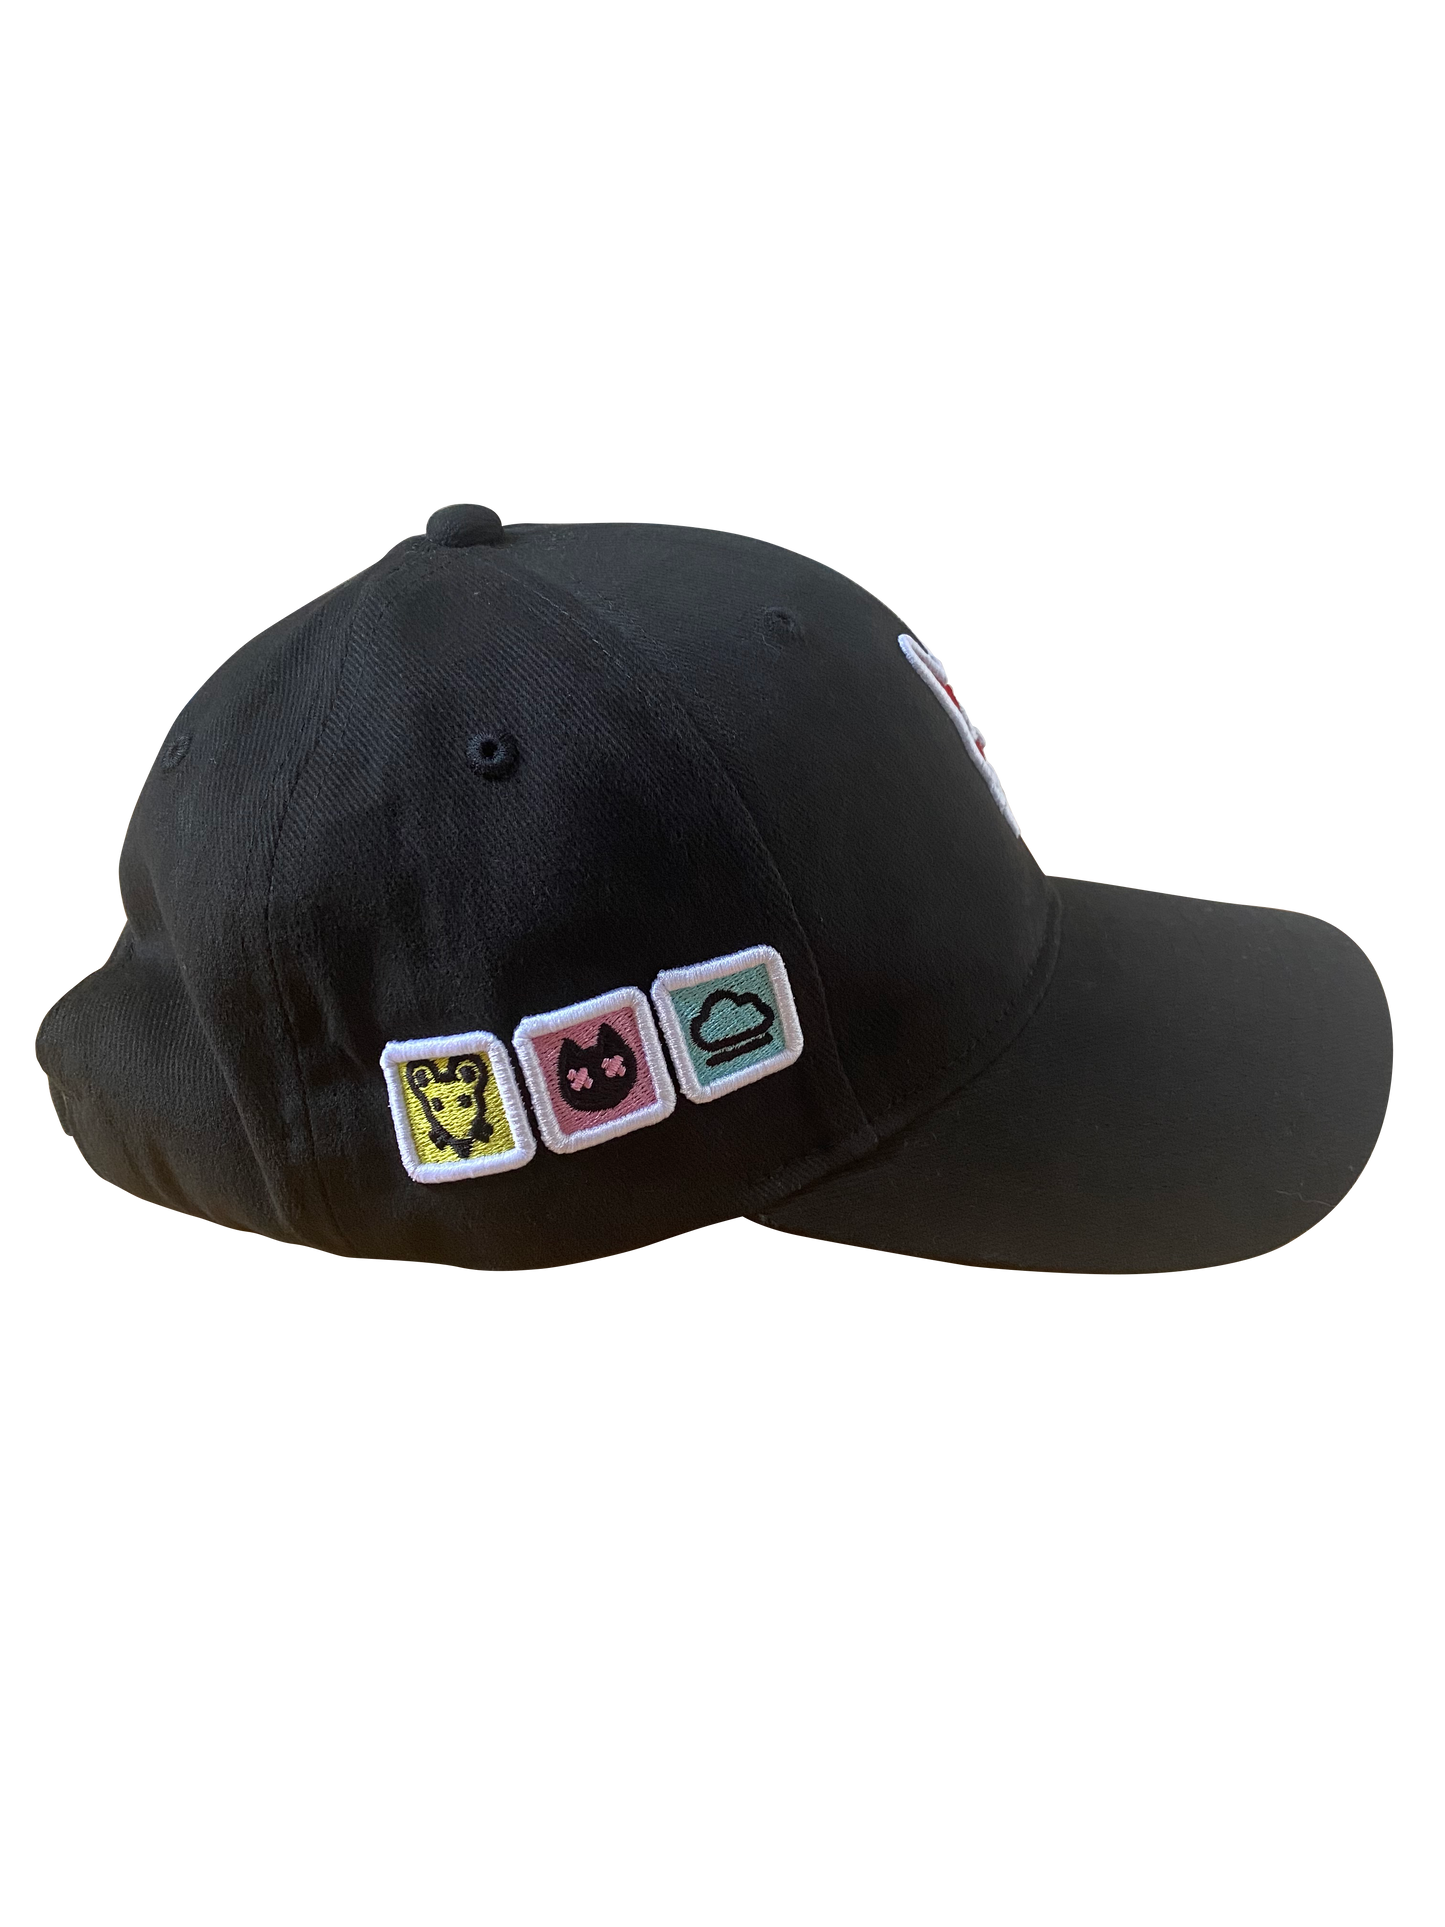 CyberBrokers Hi-Res Hat in Black